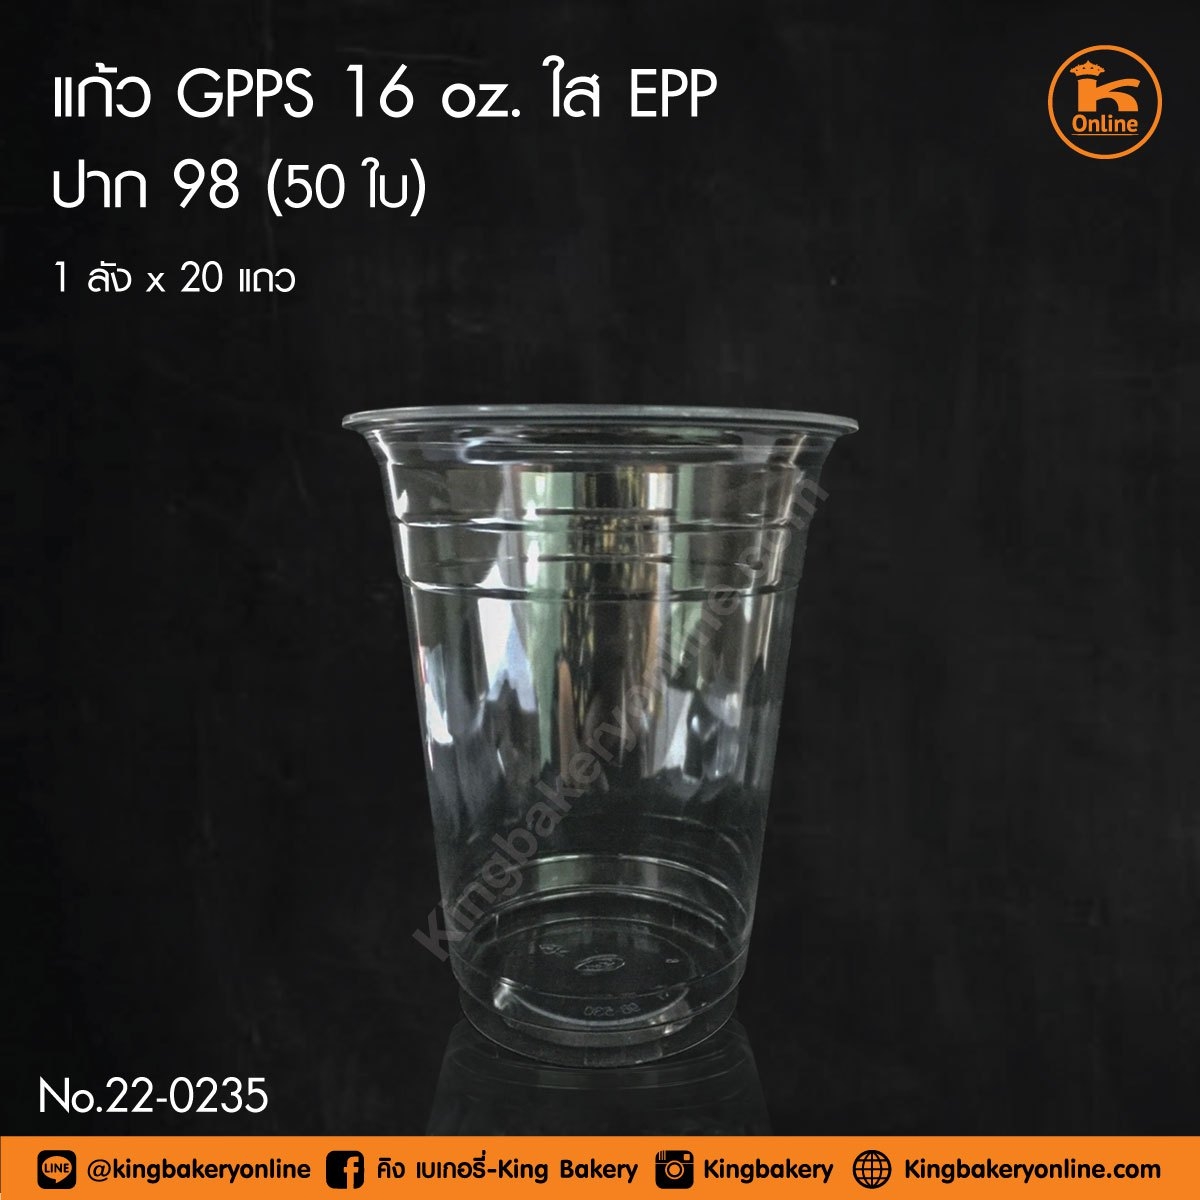 แก้ว GPPS 16 oz. ใส EPP ปาก 98 (ลังx20แถว)